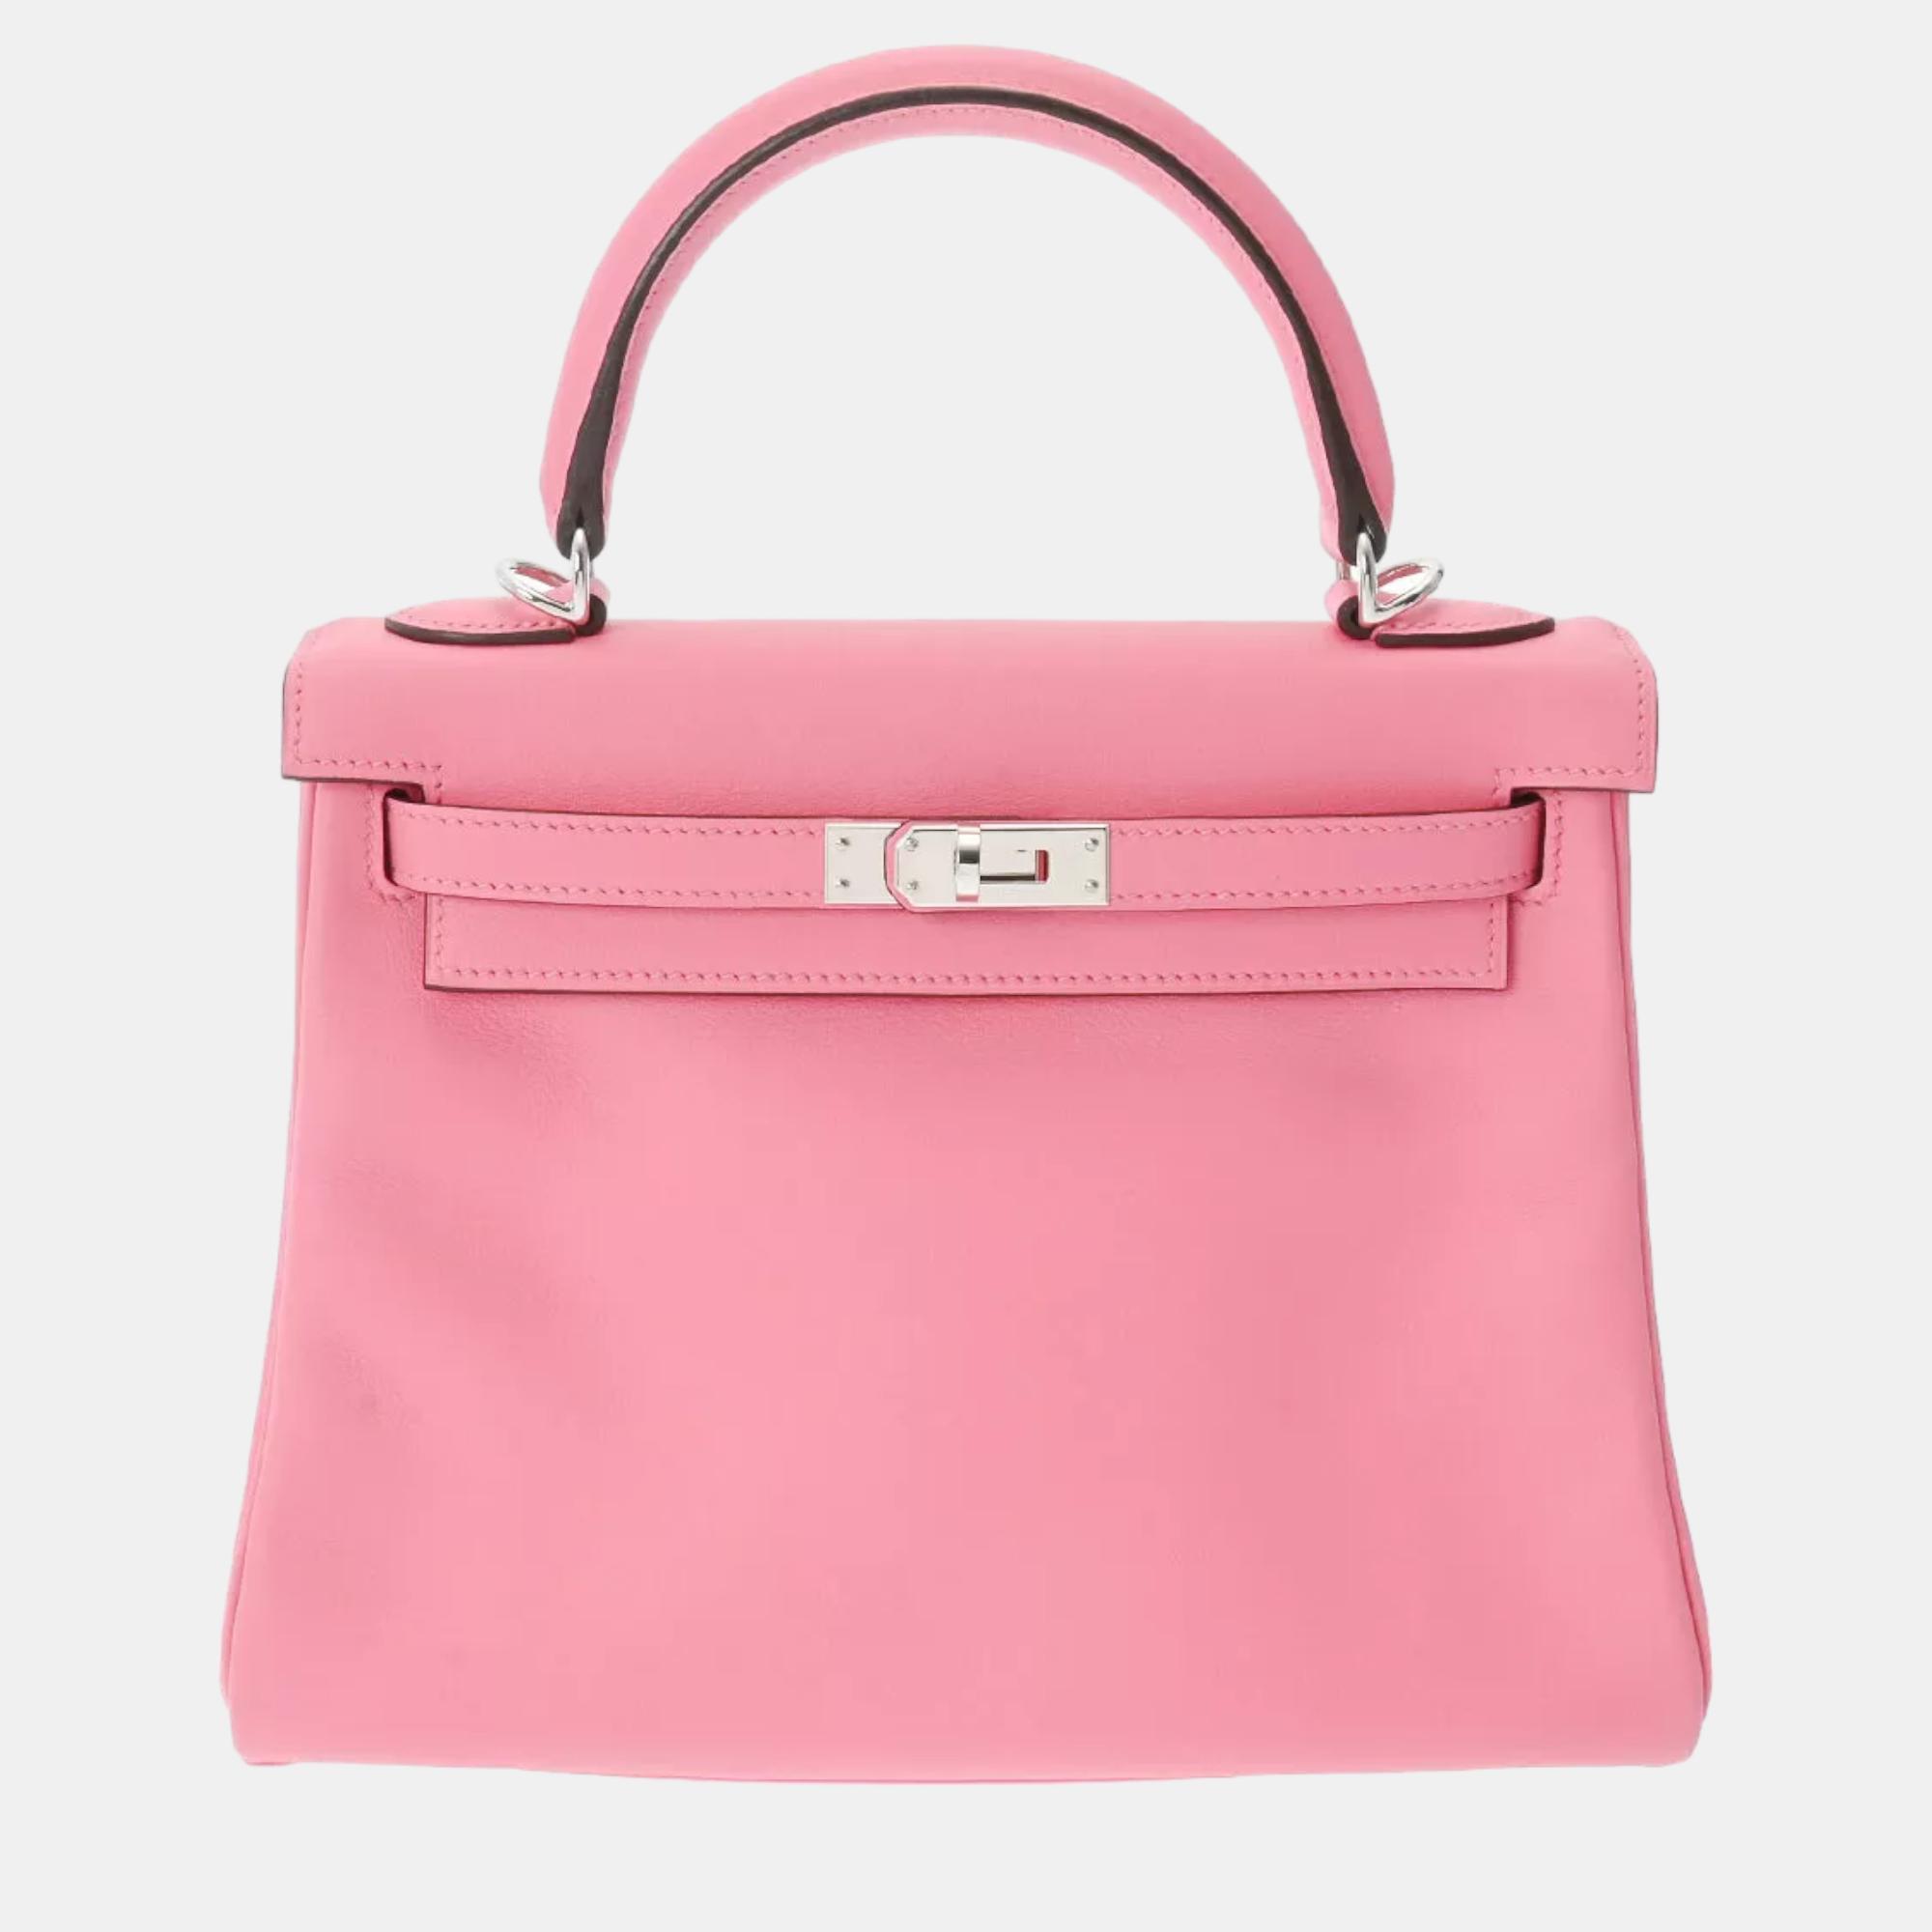 

Hermes Pink Togo Leather Kelly Retourne 28 Handbag